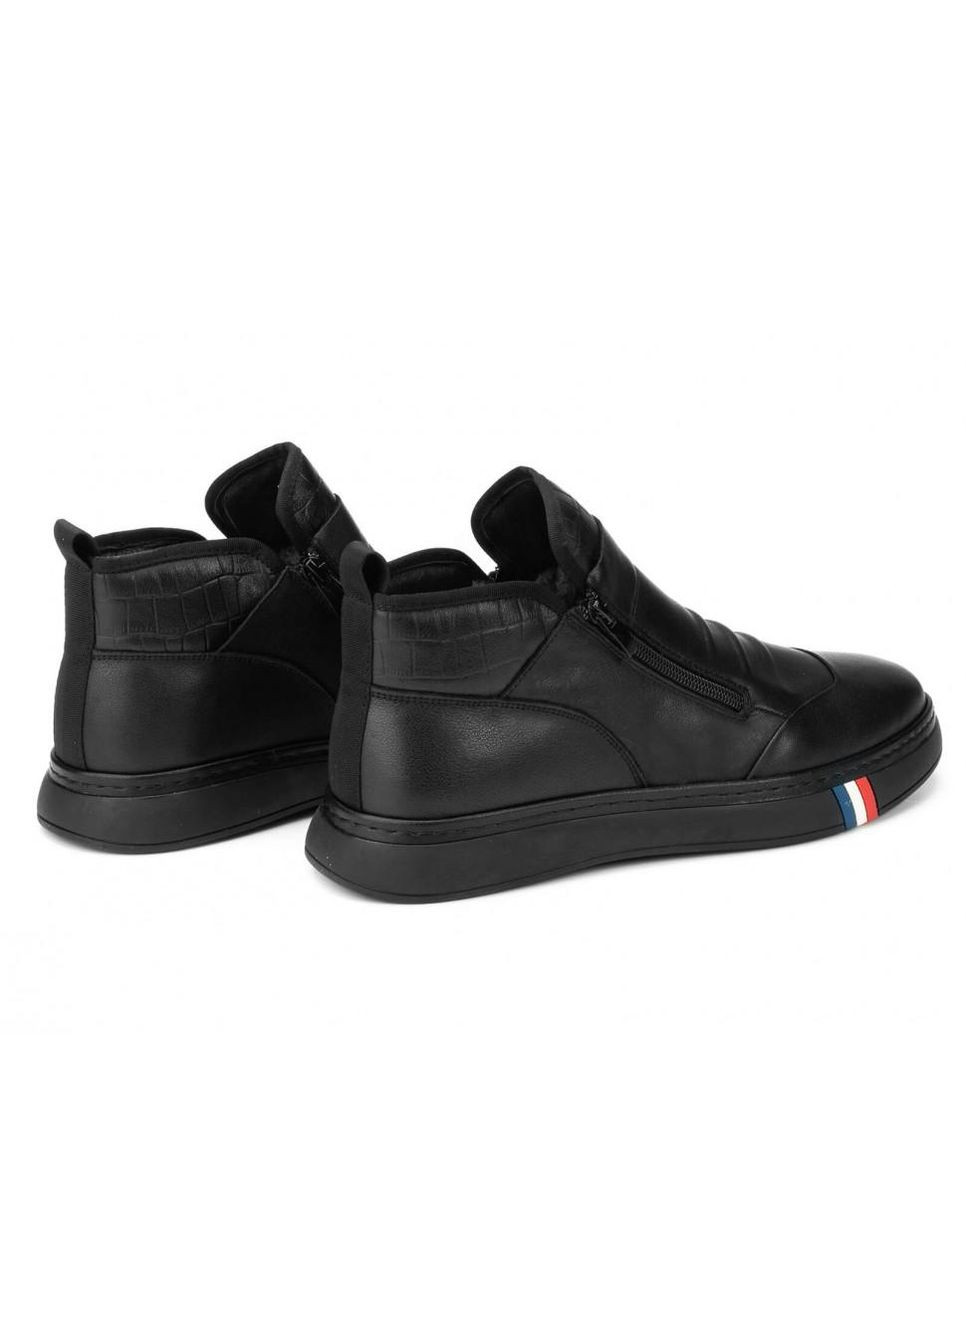 Черные зимние ботинки 7214307-б цвет черный Clemento